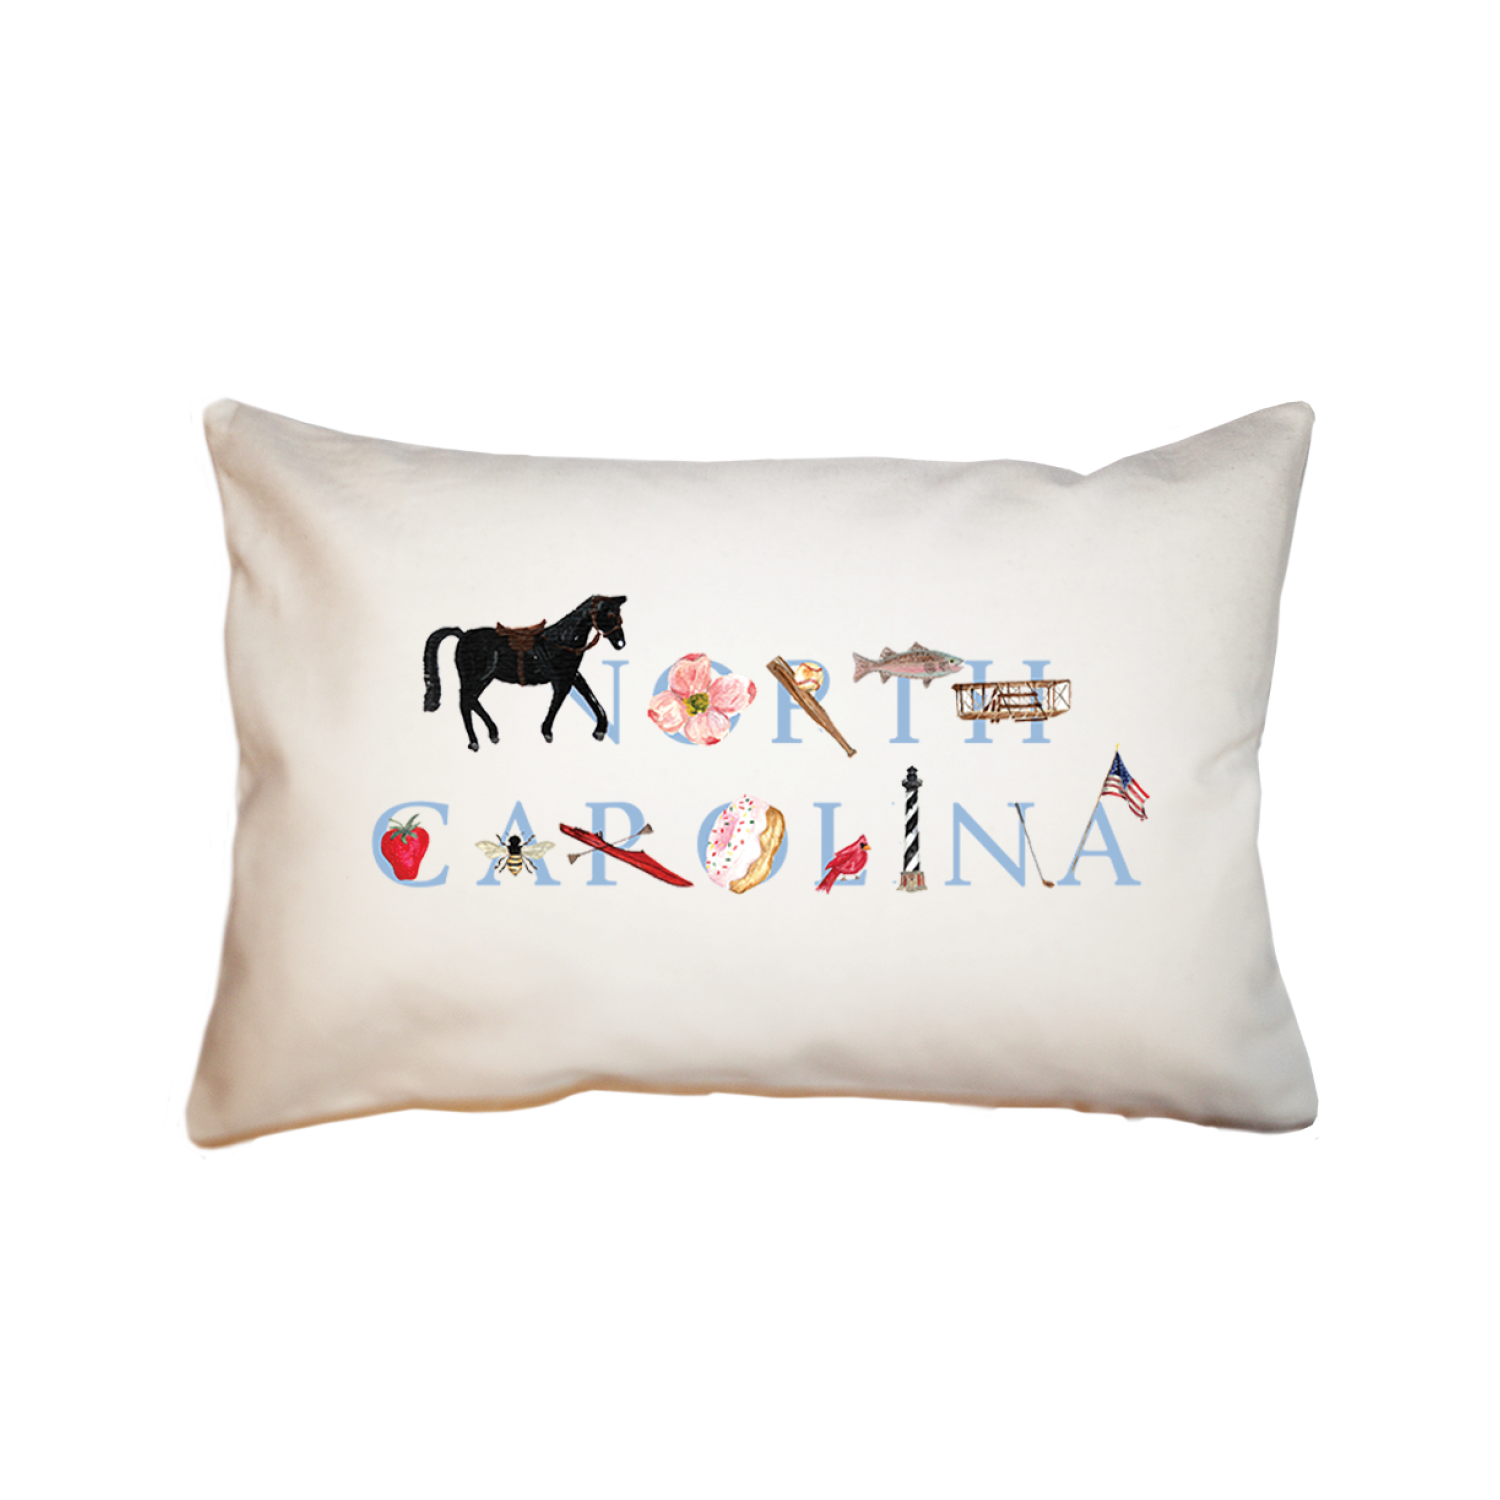 North Carolina large rectangle pillow